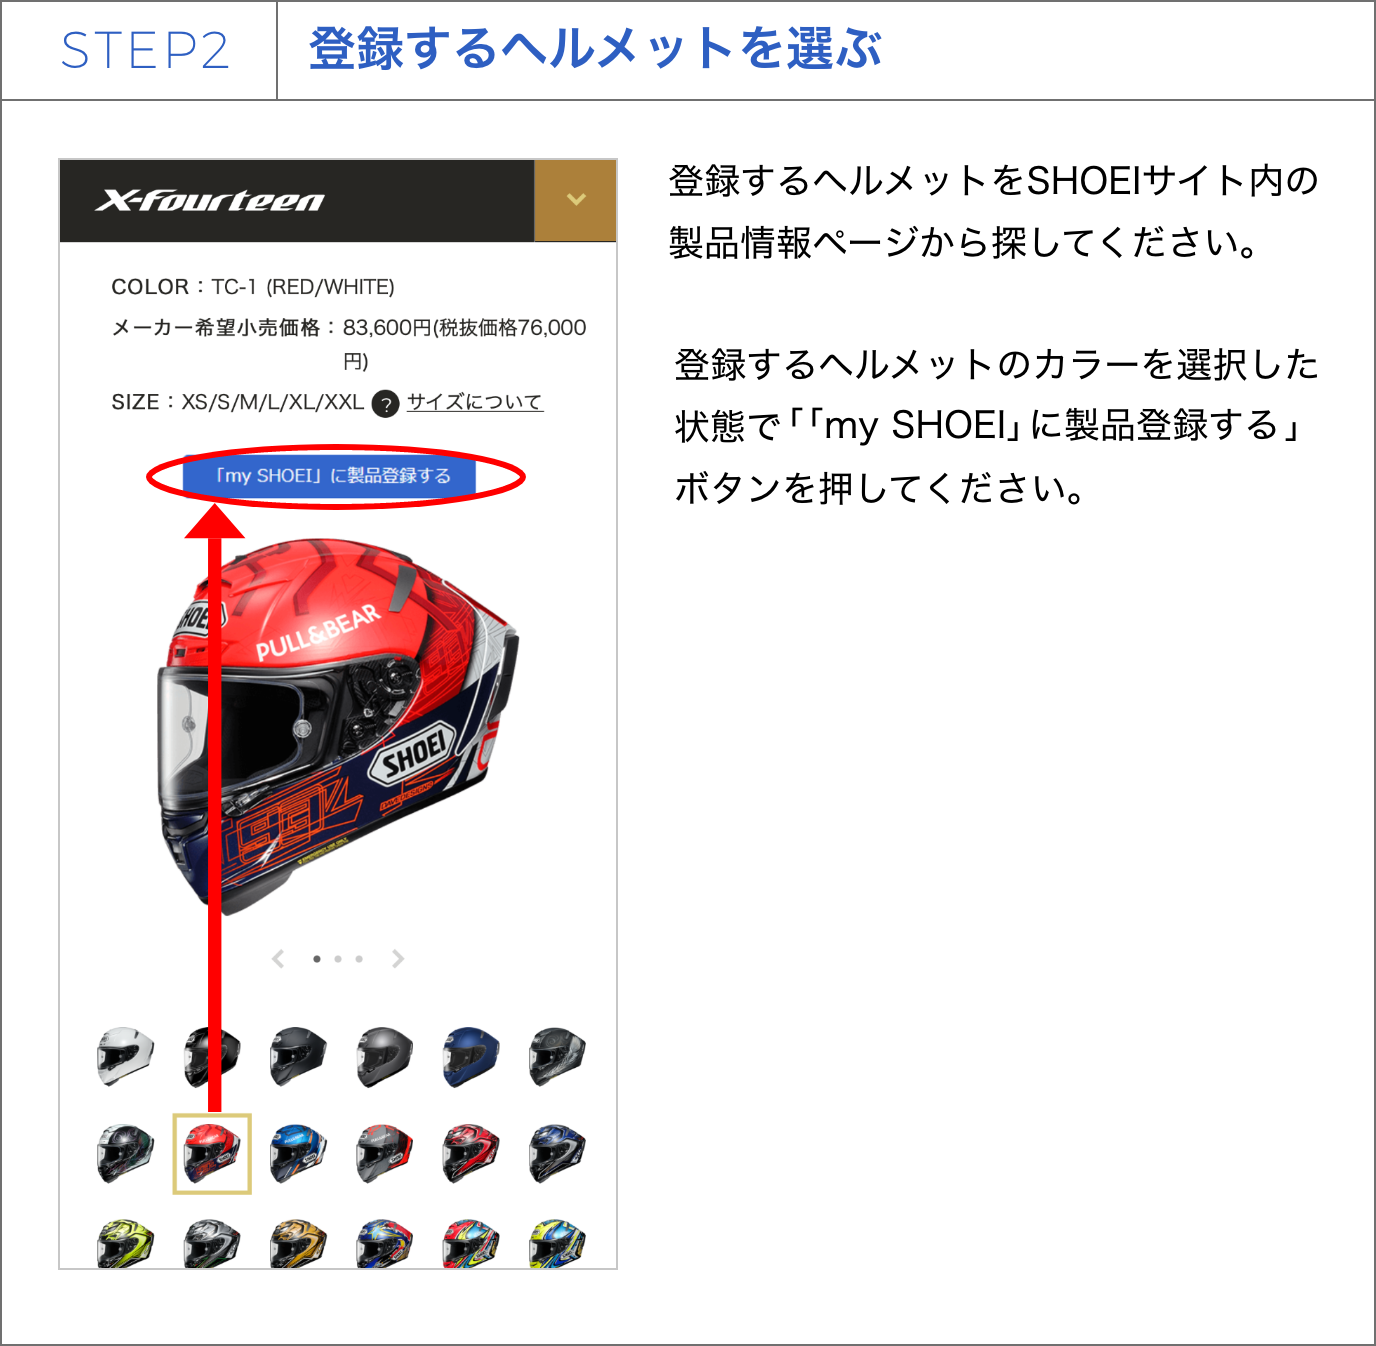 STEP2 登録するヘルメットを選ぶ